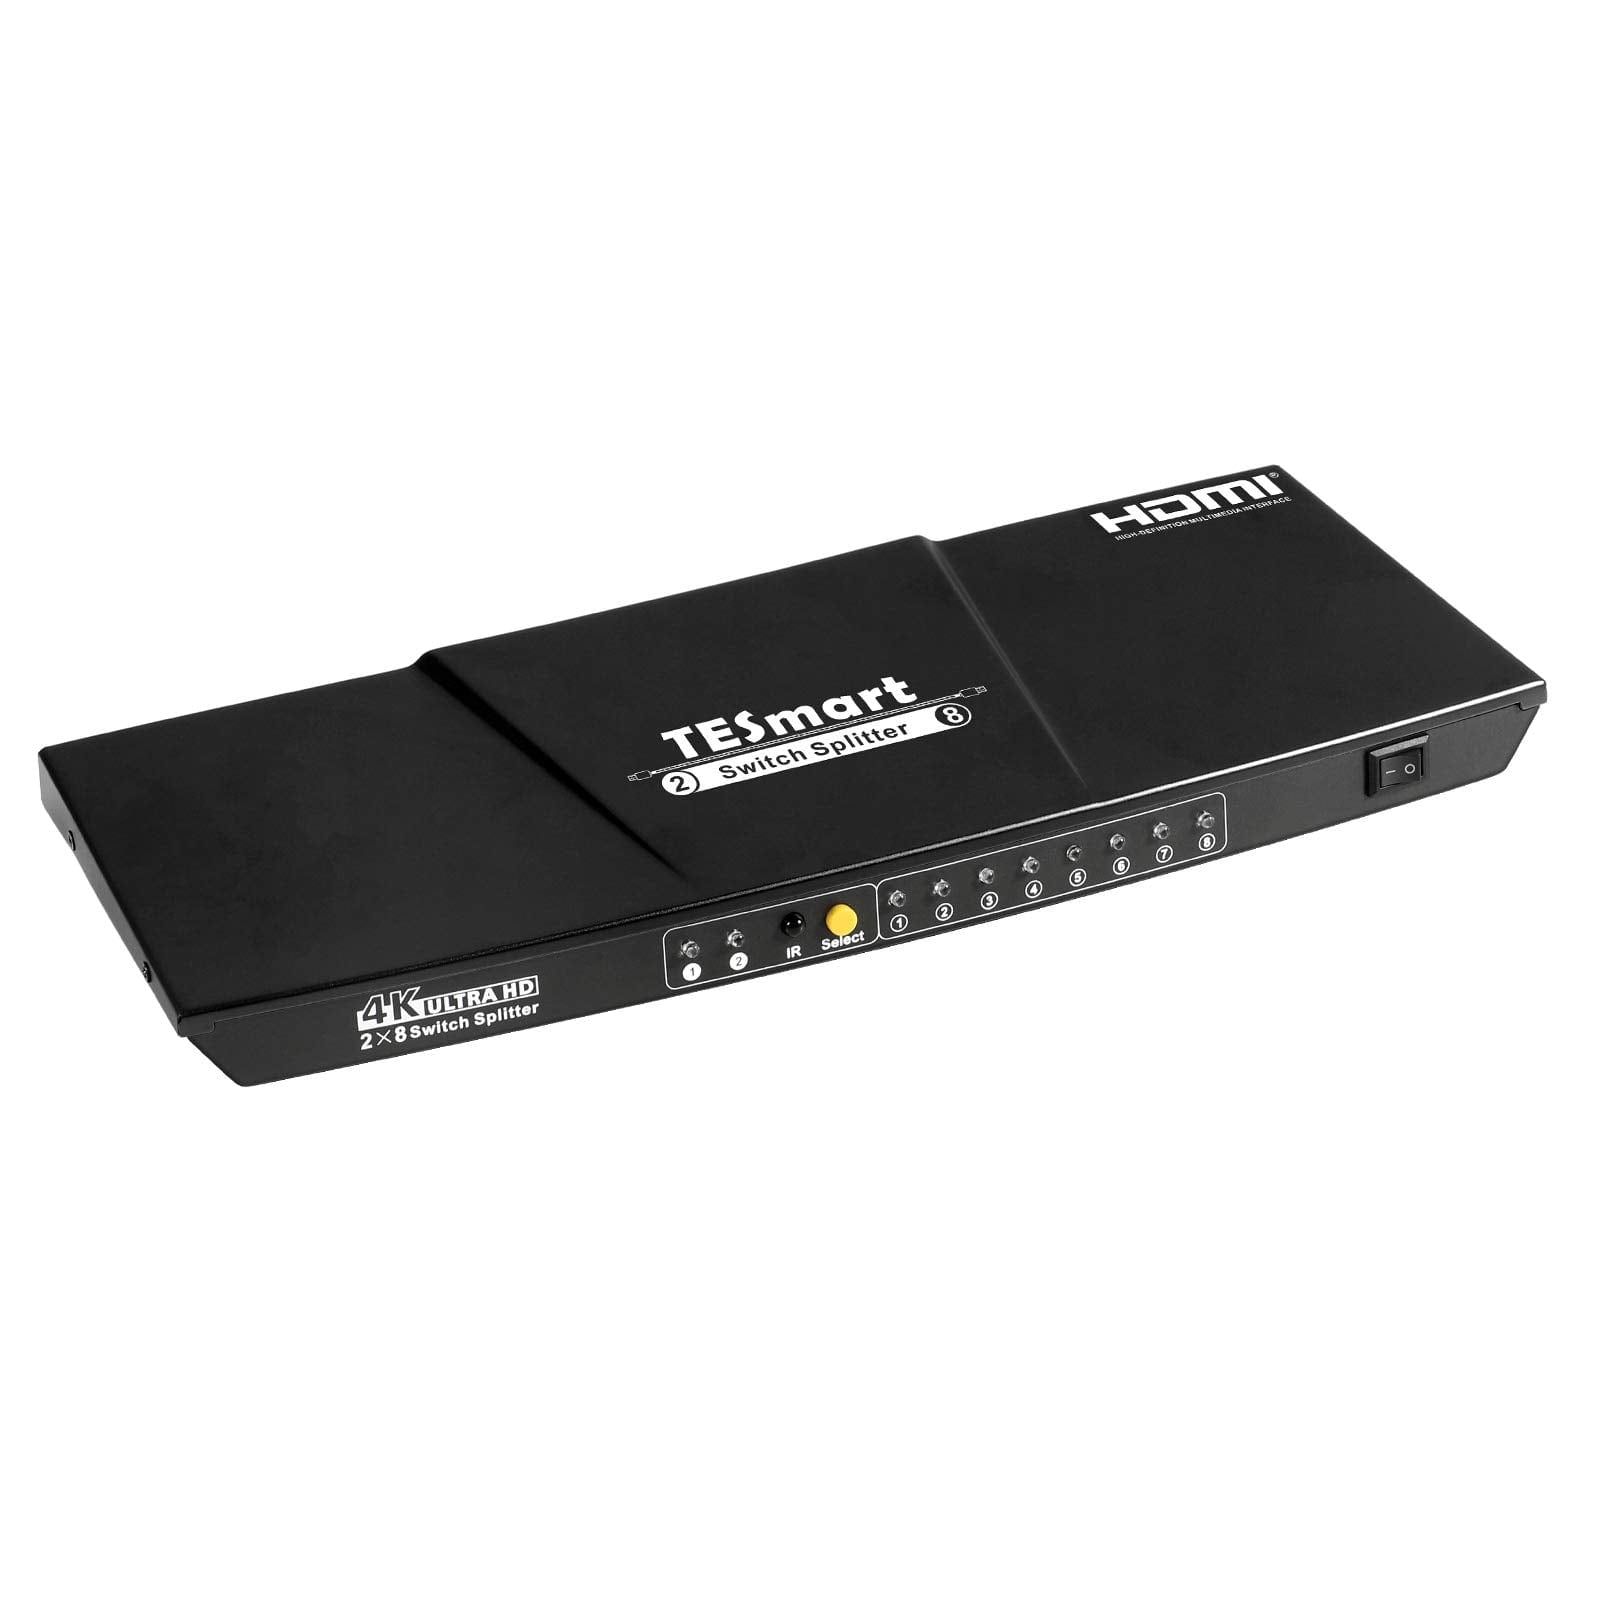 TESmart HSP0208A20-EUBK HDMI Splitter 2x8 HDMI Splitter 4K 60Hz für DVD Player TV Box HDMI Splitter  2 in 8 out Unterstützung  4K 60Hz HDR HDCP 2.2 -TESmart EU Plug / Black / 4K@30Hz